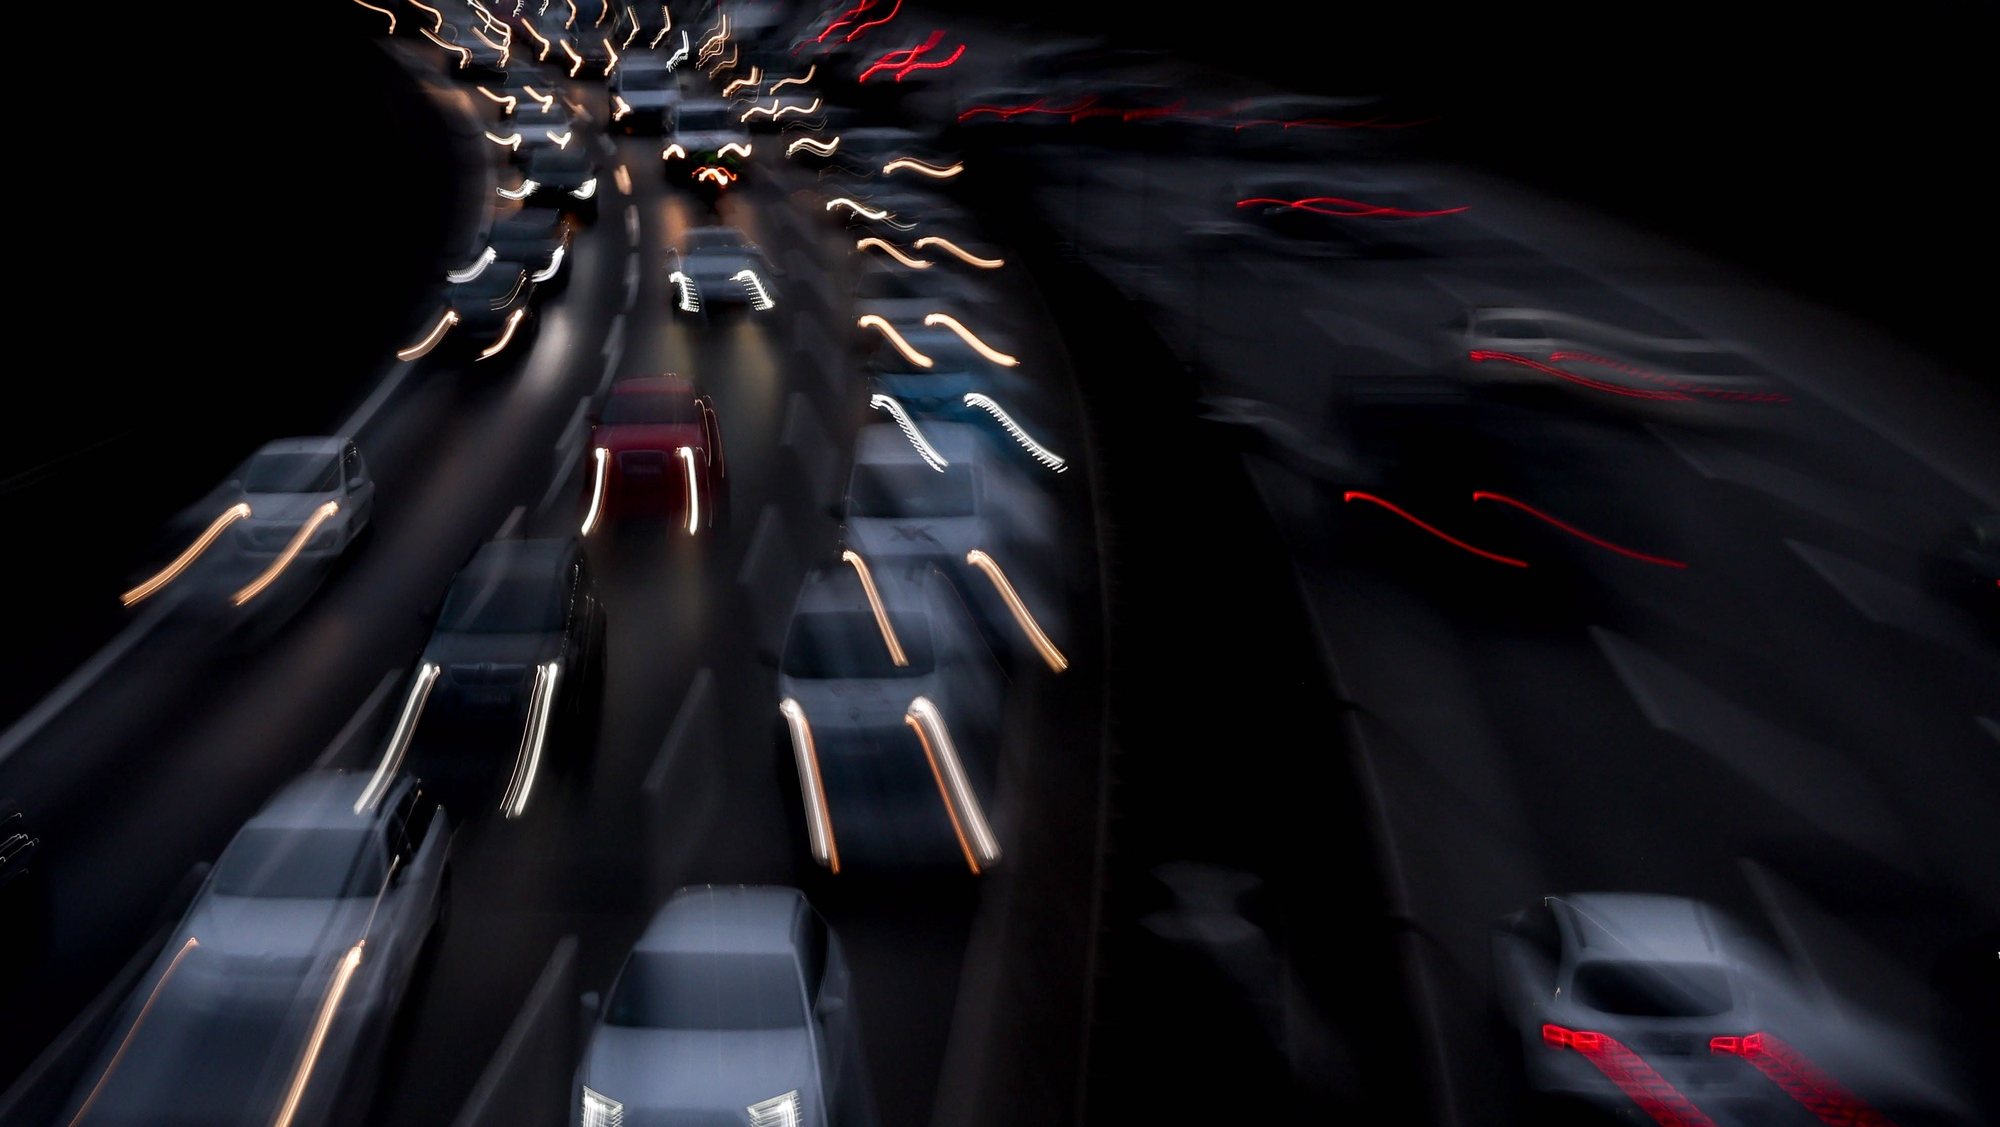 Uma imagem mostra carros na autoestrada